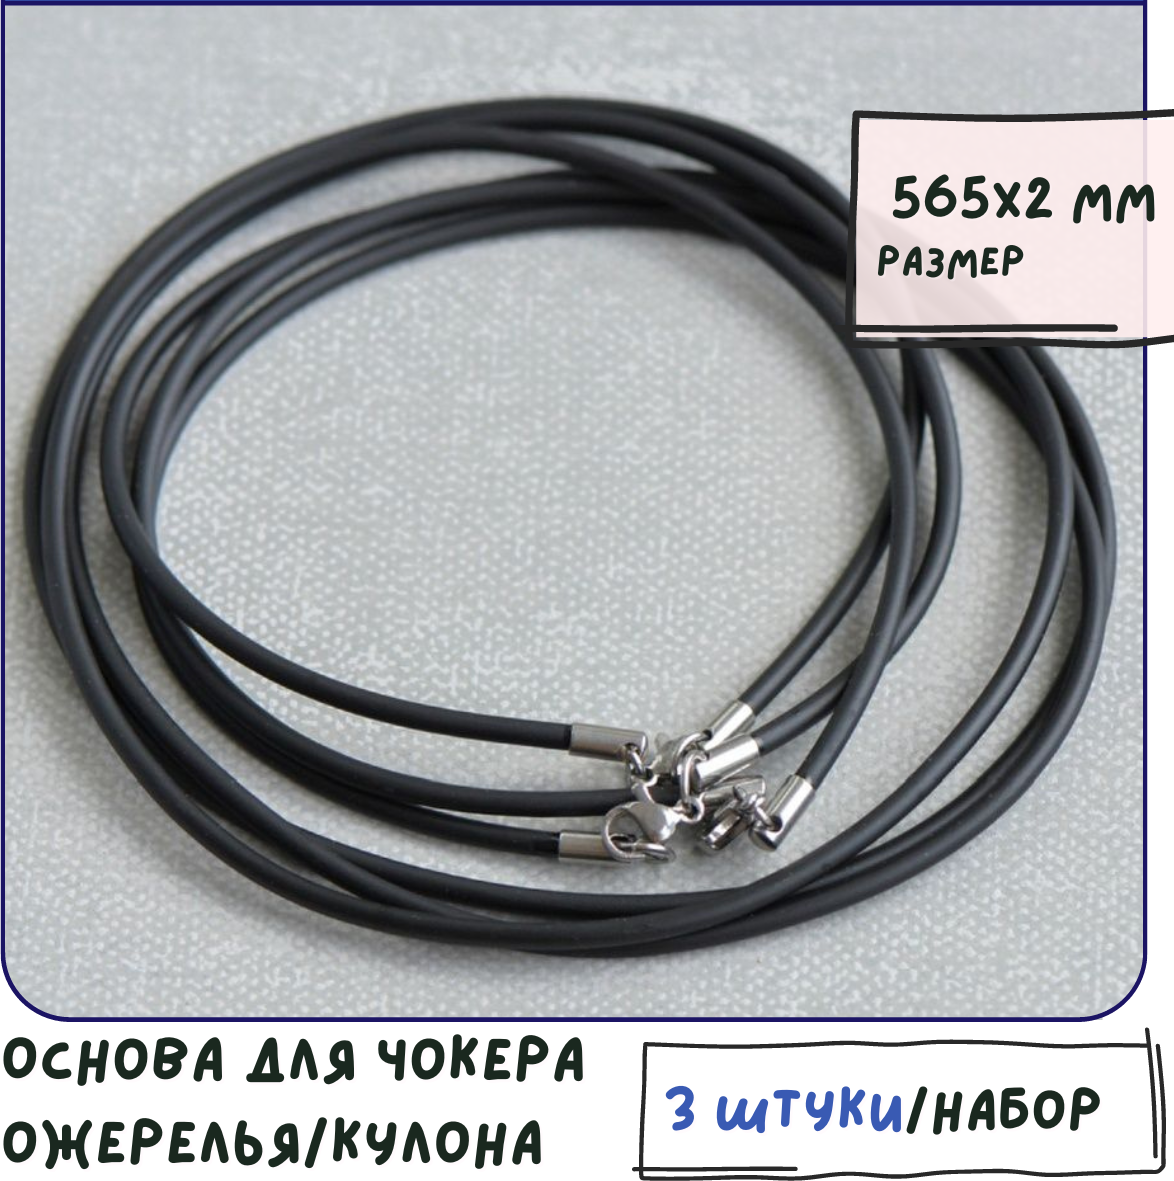 Основа для ожерелья/кулона/чокера с замочком нерж. сталь (3 шт.), резиновый шнур, размер 565х2 мм, цвет черный